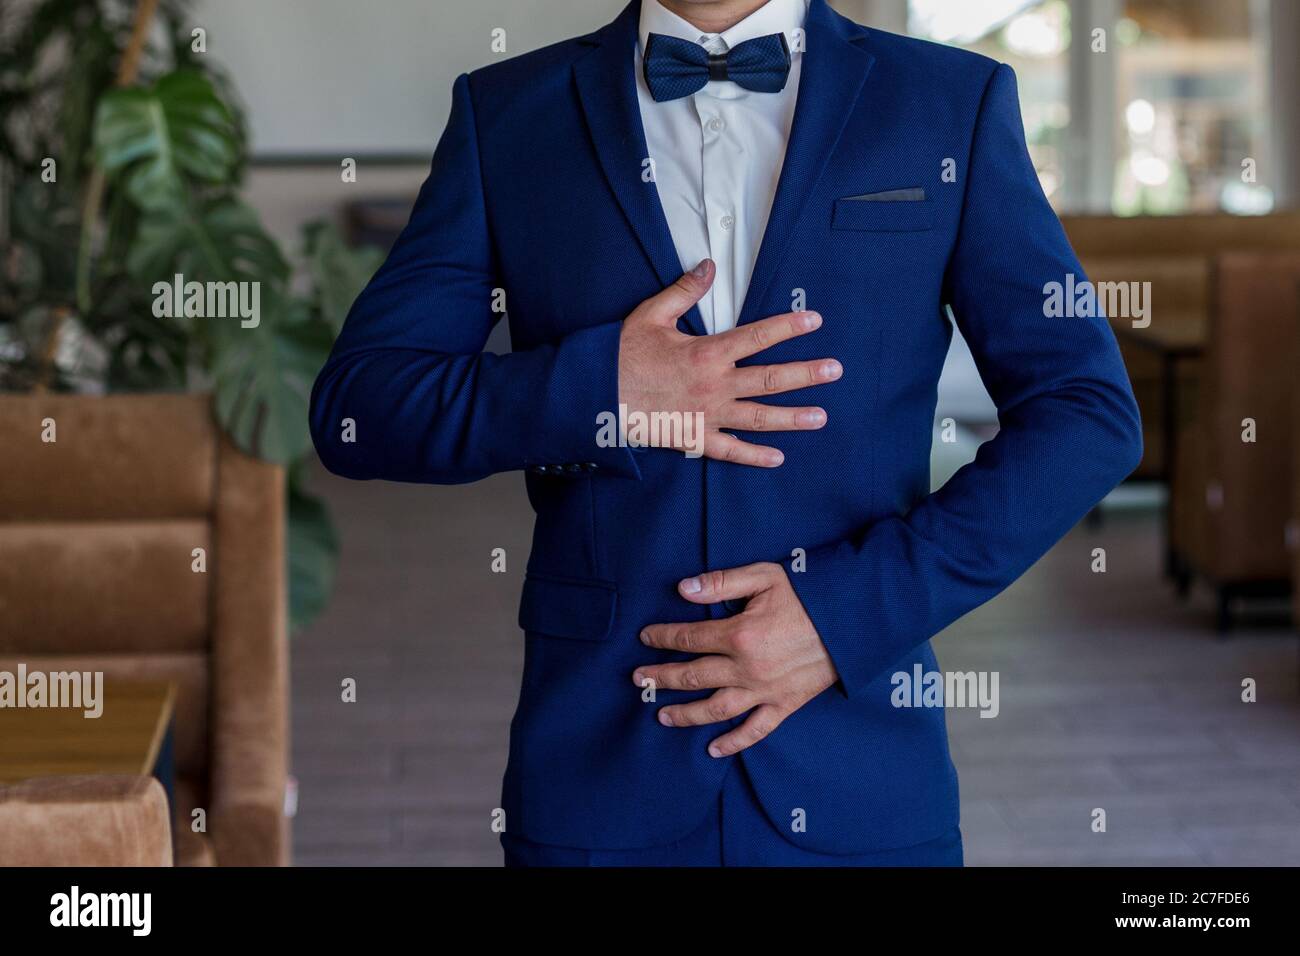 Ein Mann in blauem Anzug und Fliege Stockfotografie - Alamy